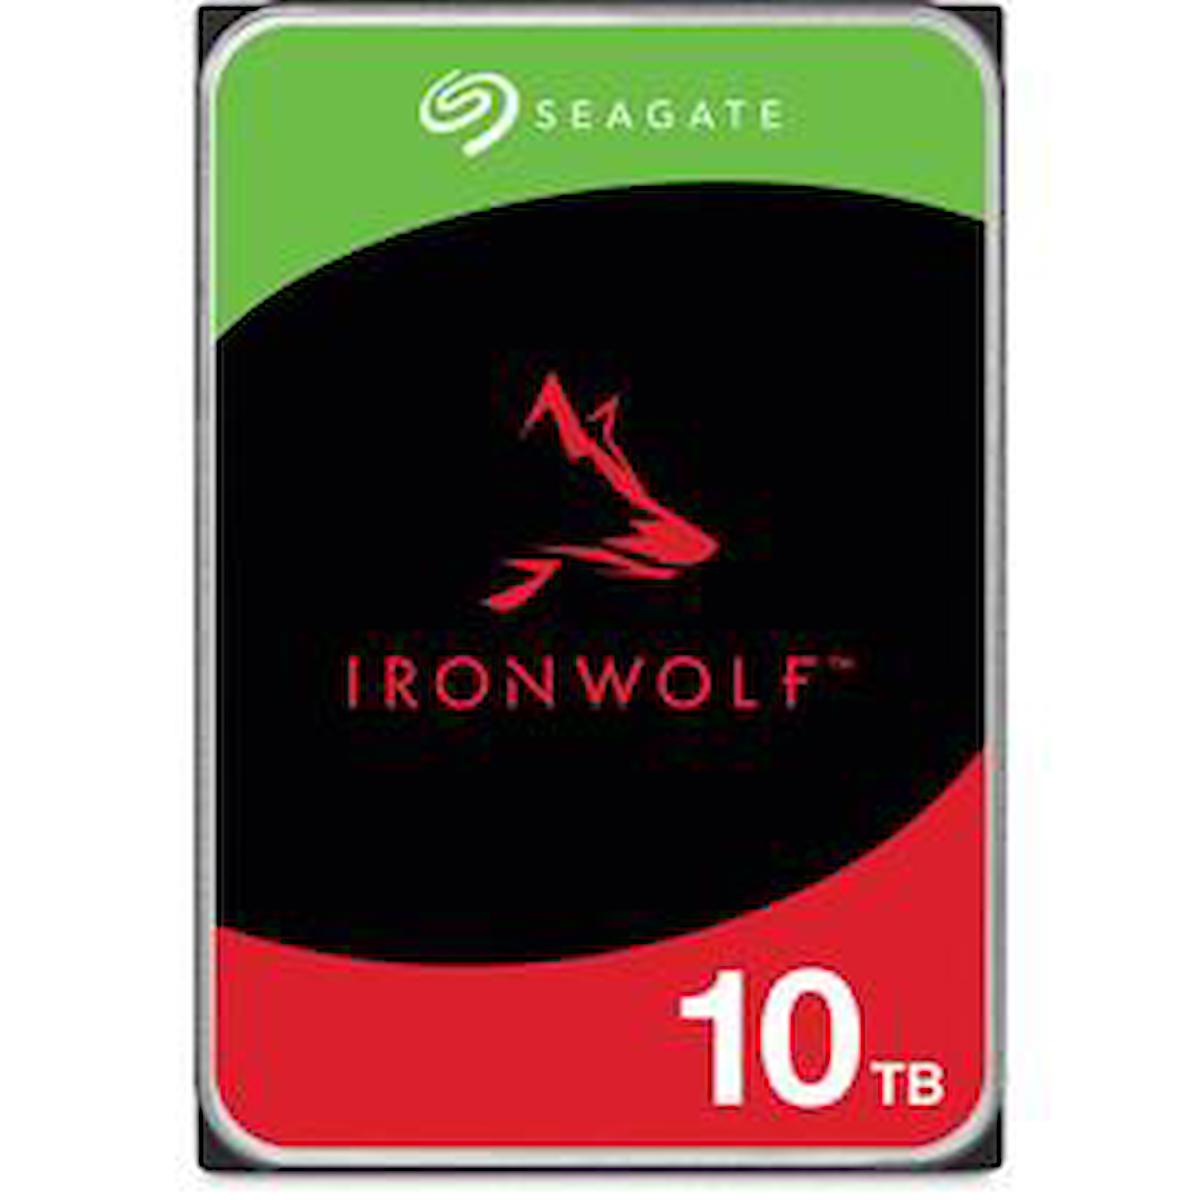 Seagate Ironwolf ST10000VN000 10 TB 3.5 inç 256 MB SATA 3.0 Nas Harddisk